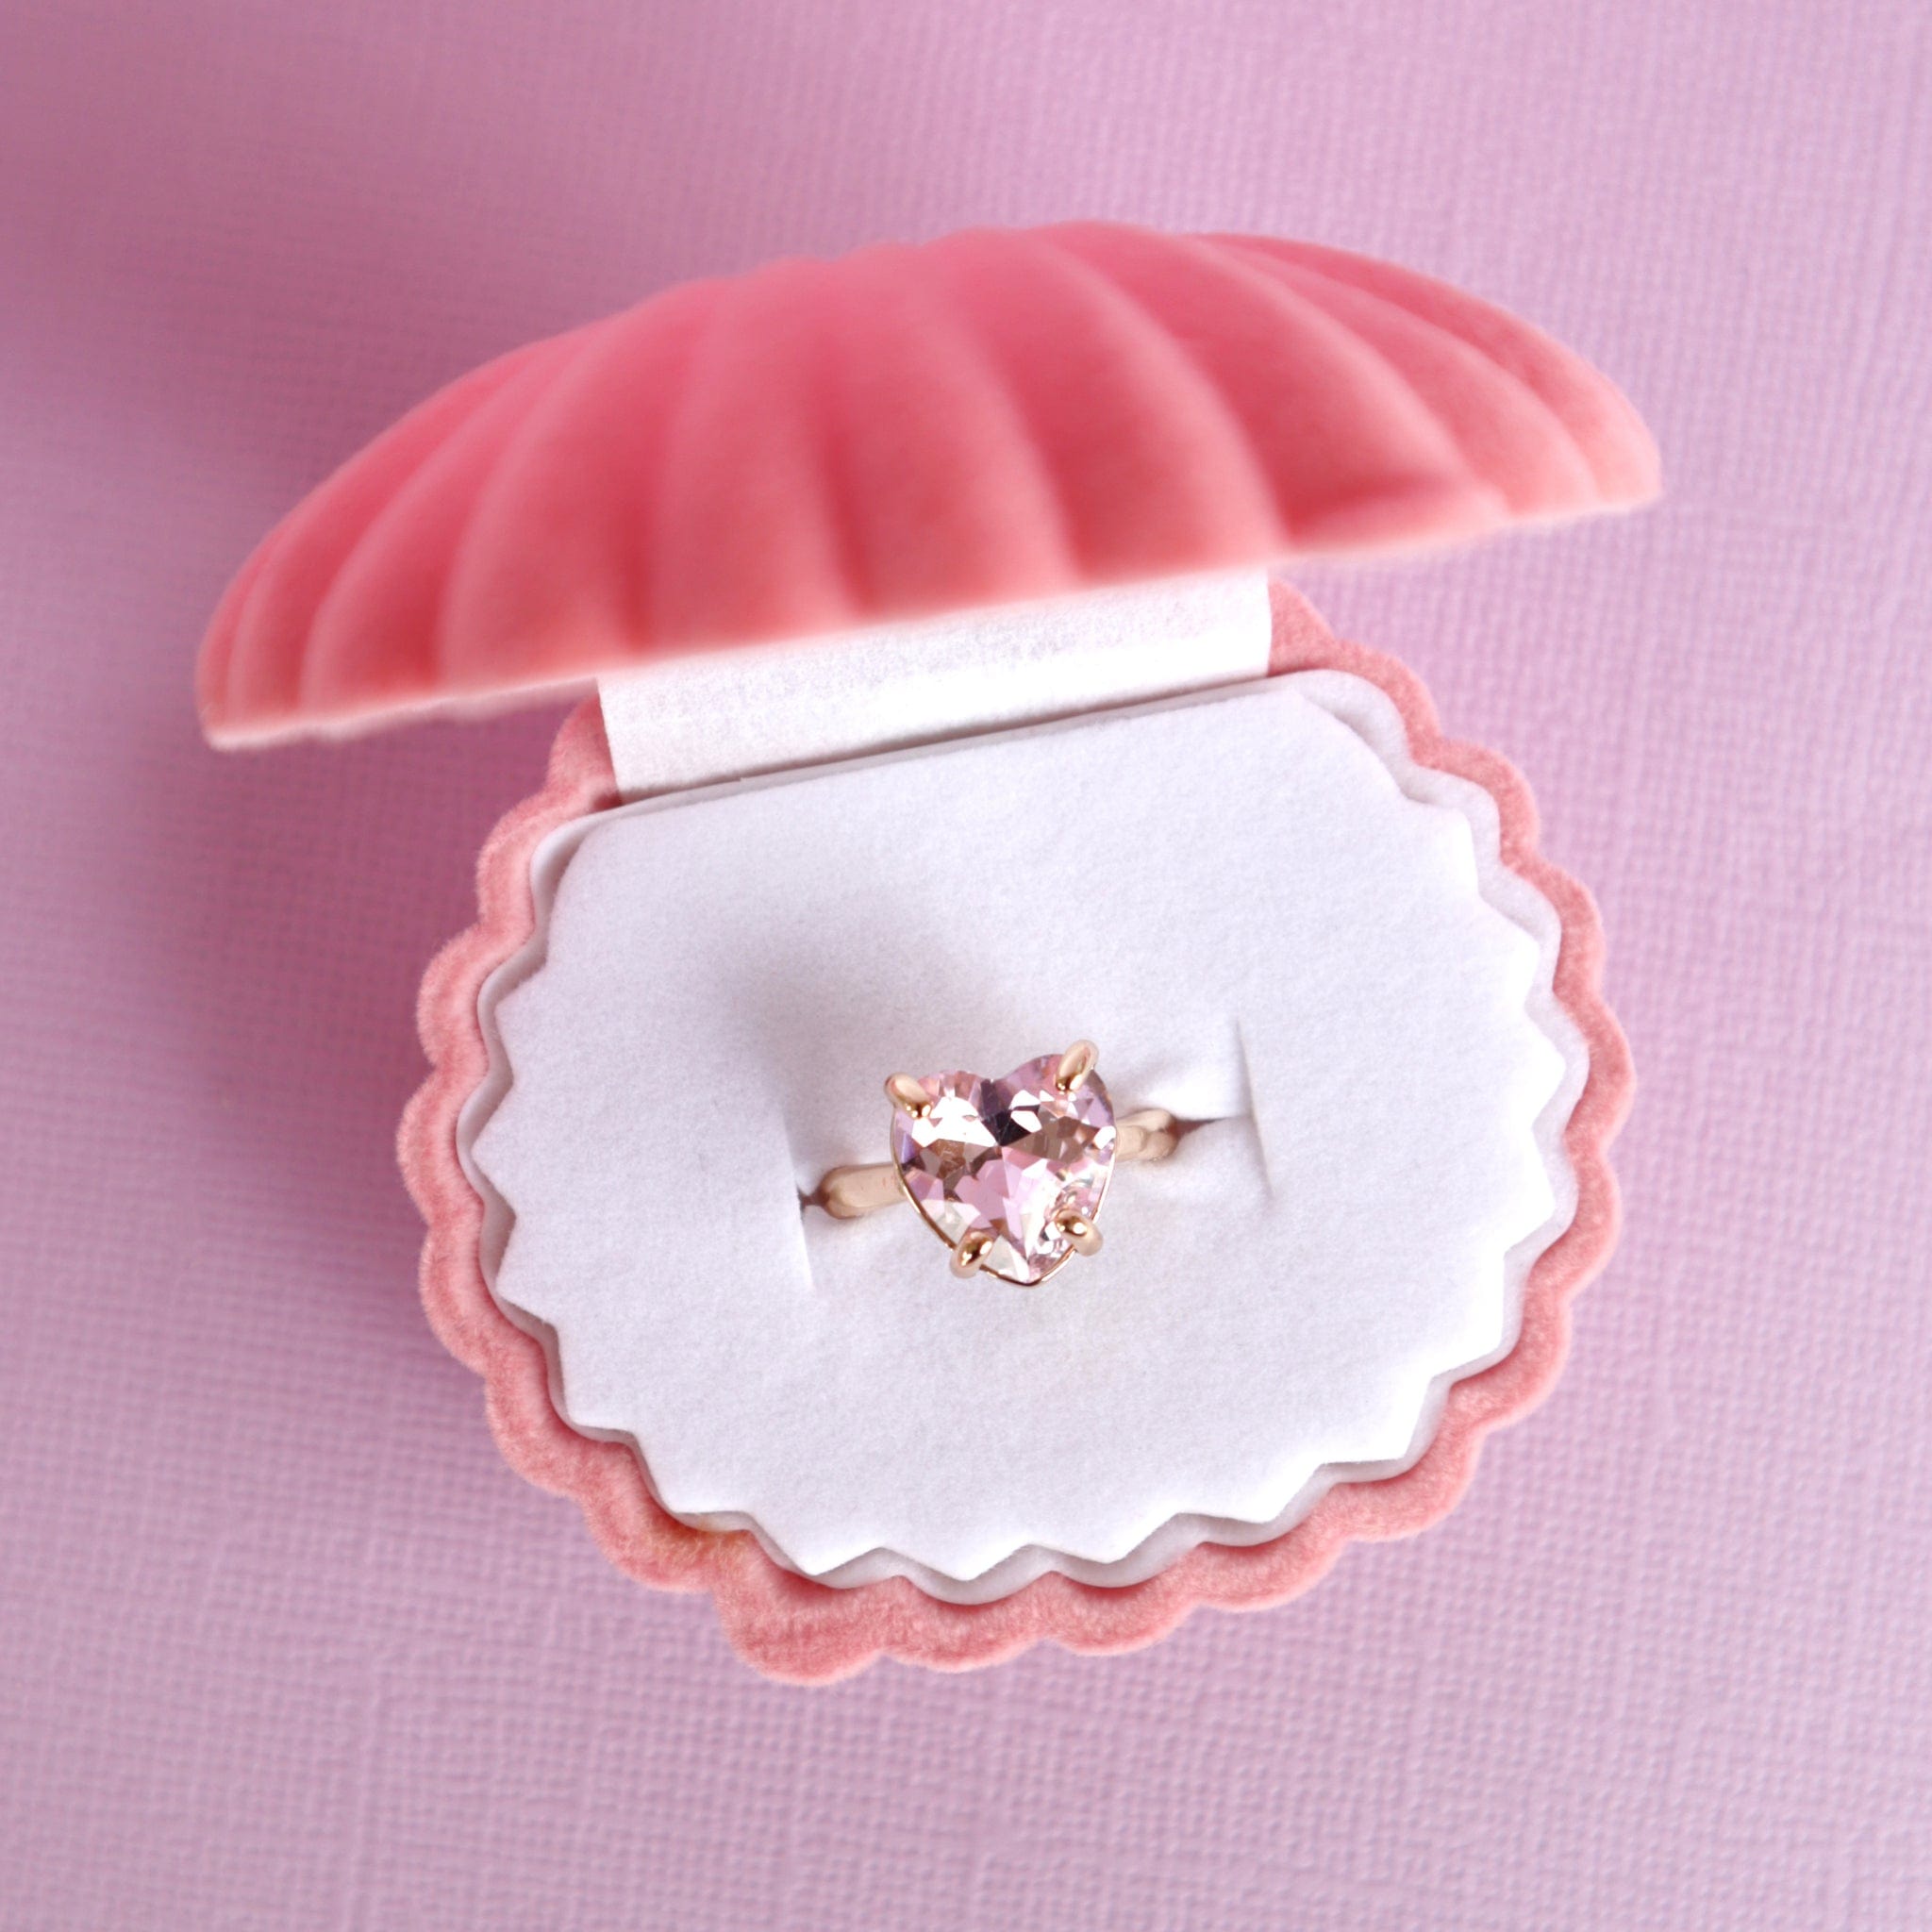 Lauren Hinkley Girls Accessory Crystal Heart Ring with Velvet Shell Box